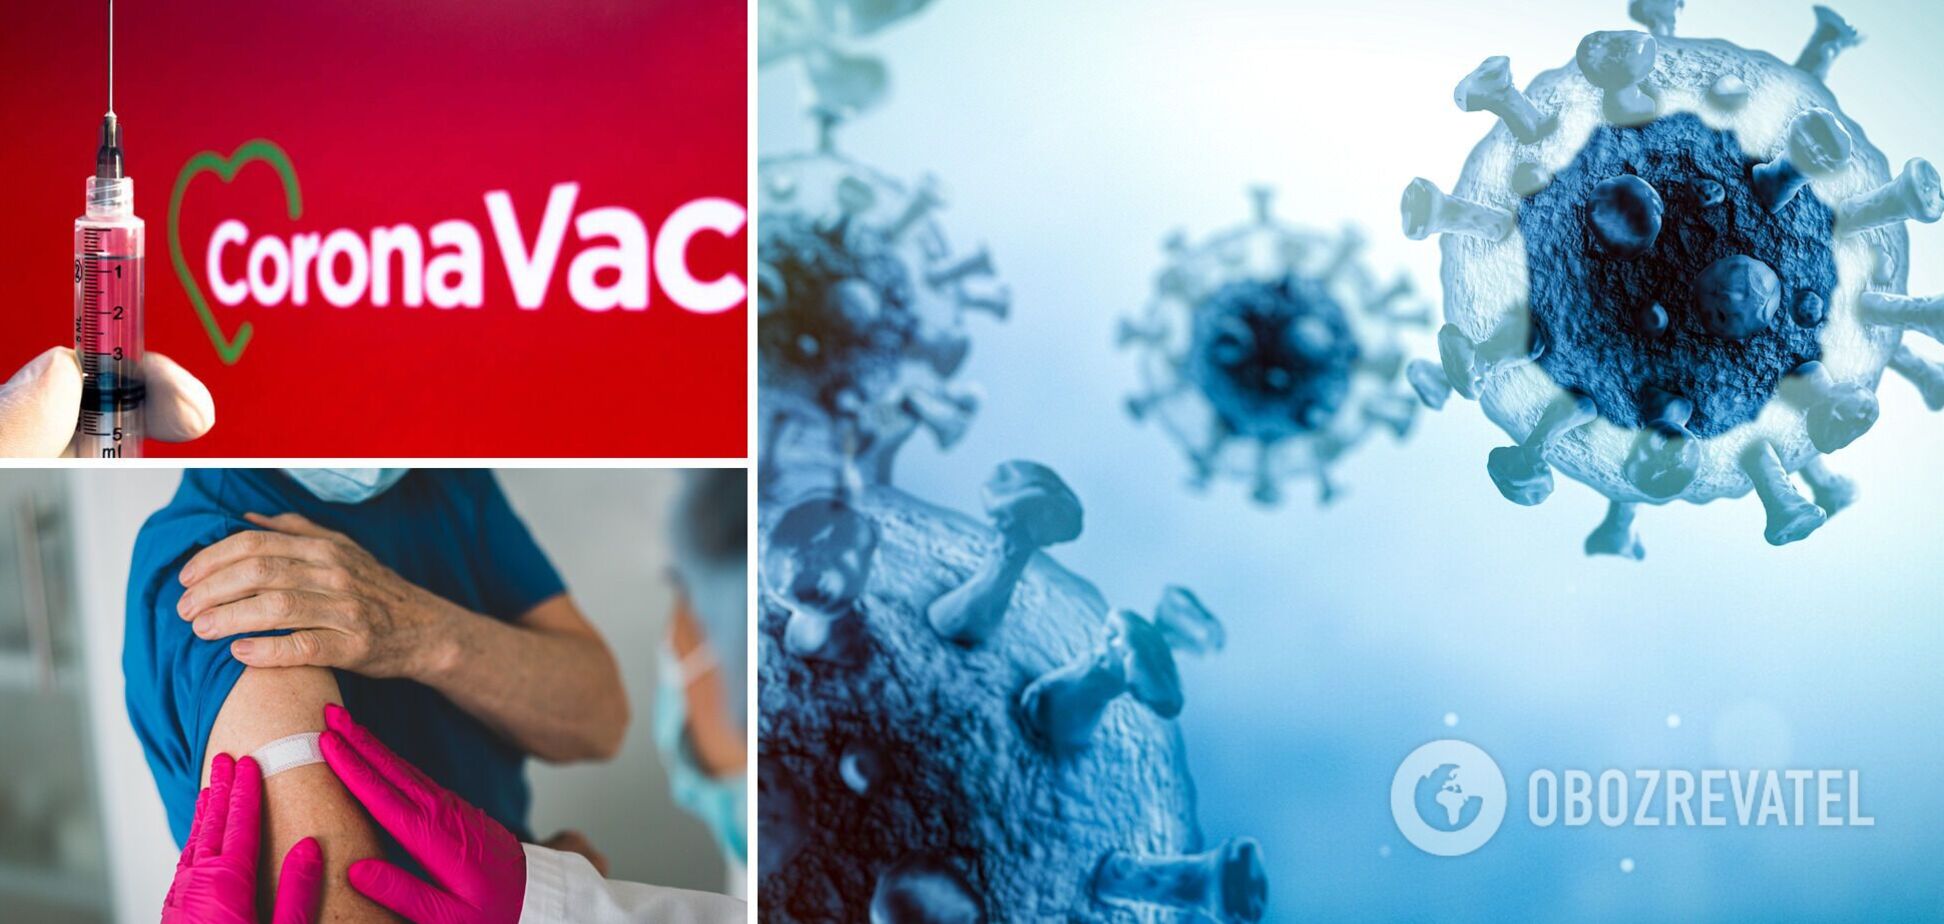 Украина получит 200 тысяч доз вакцины CoronaVac в качестве помощи от Китая